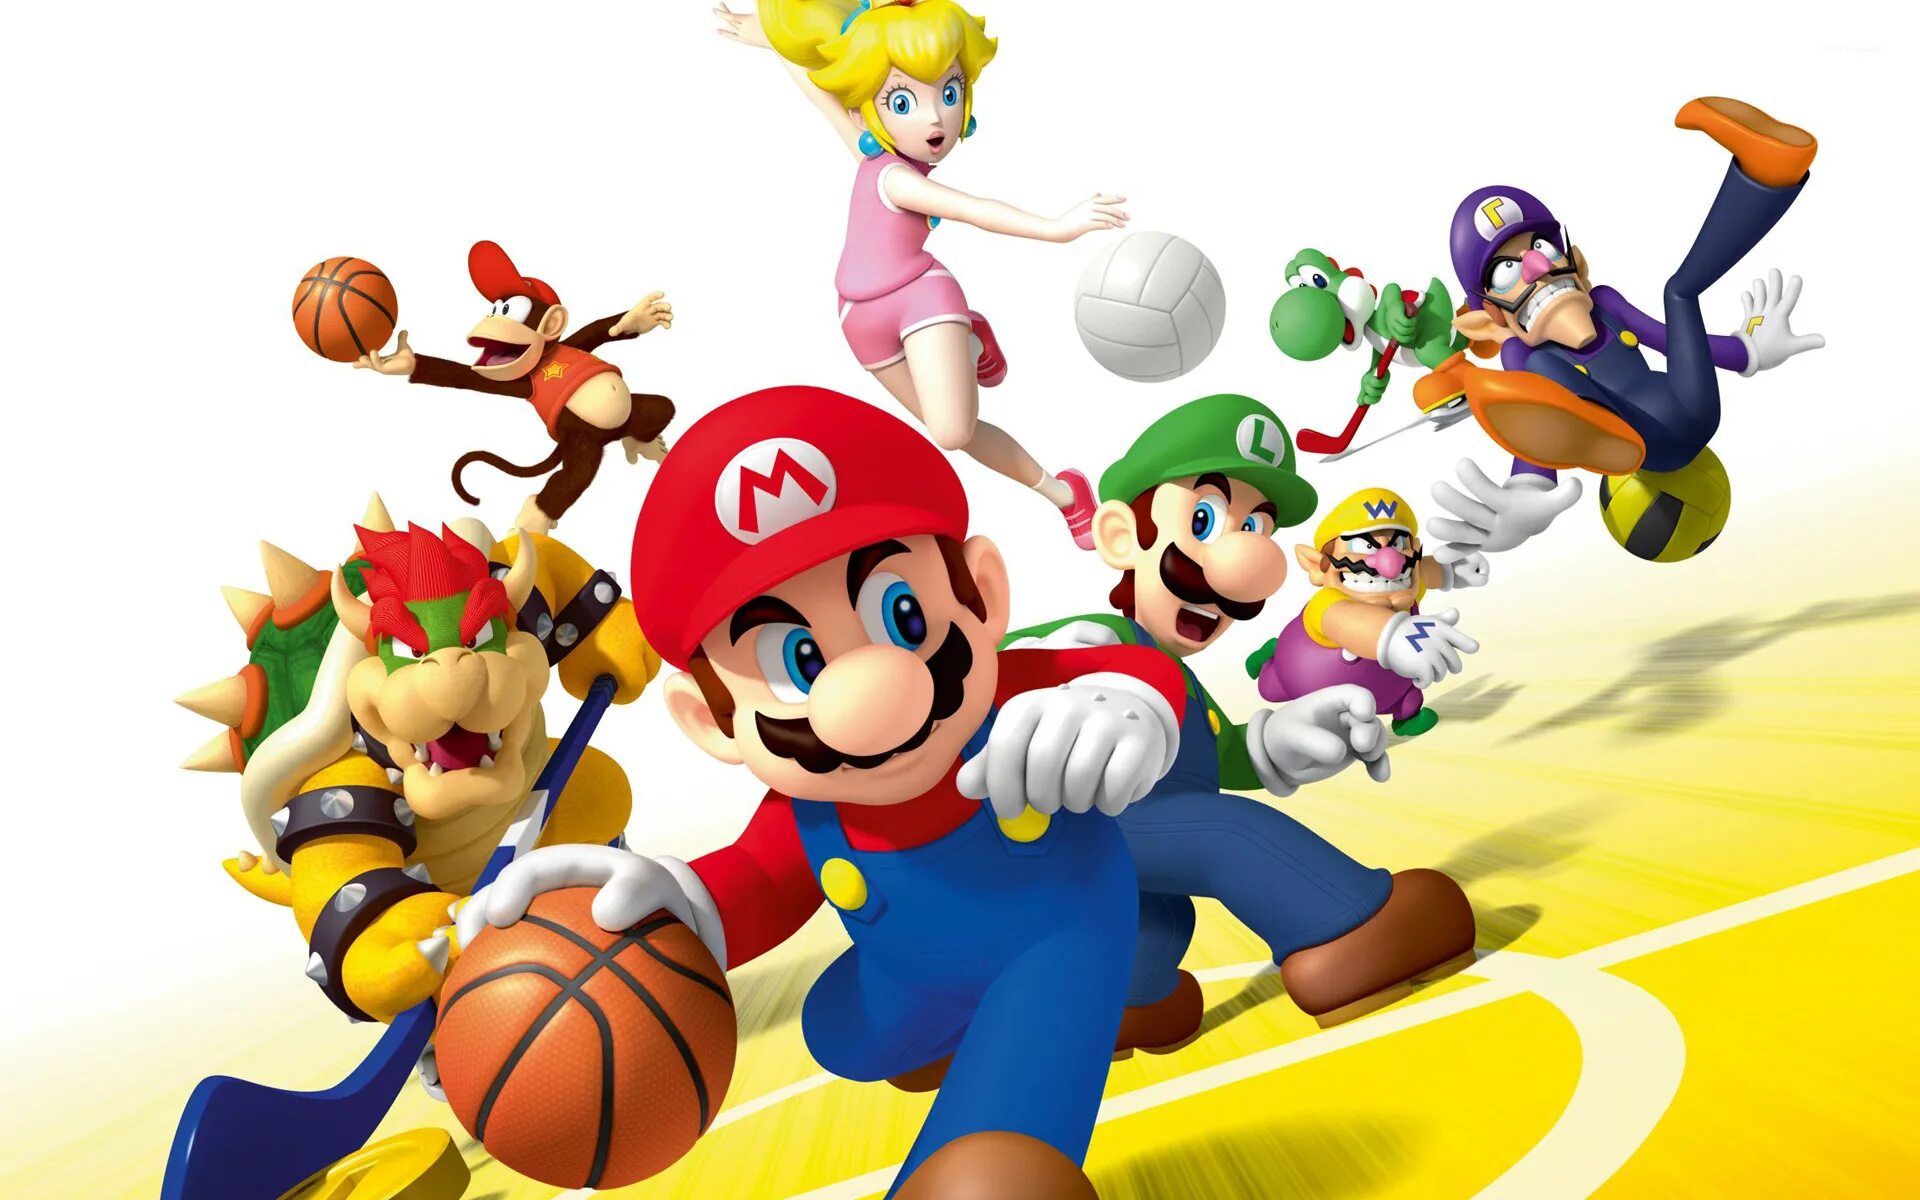 Mario bros theme. Марио. Mario Sports Mix. Марио БРОС. Марио (персонаж игр).